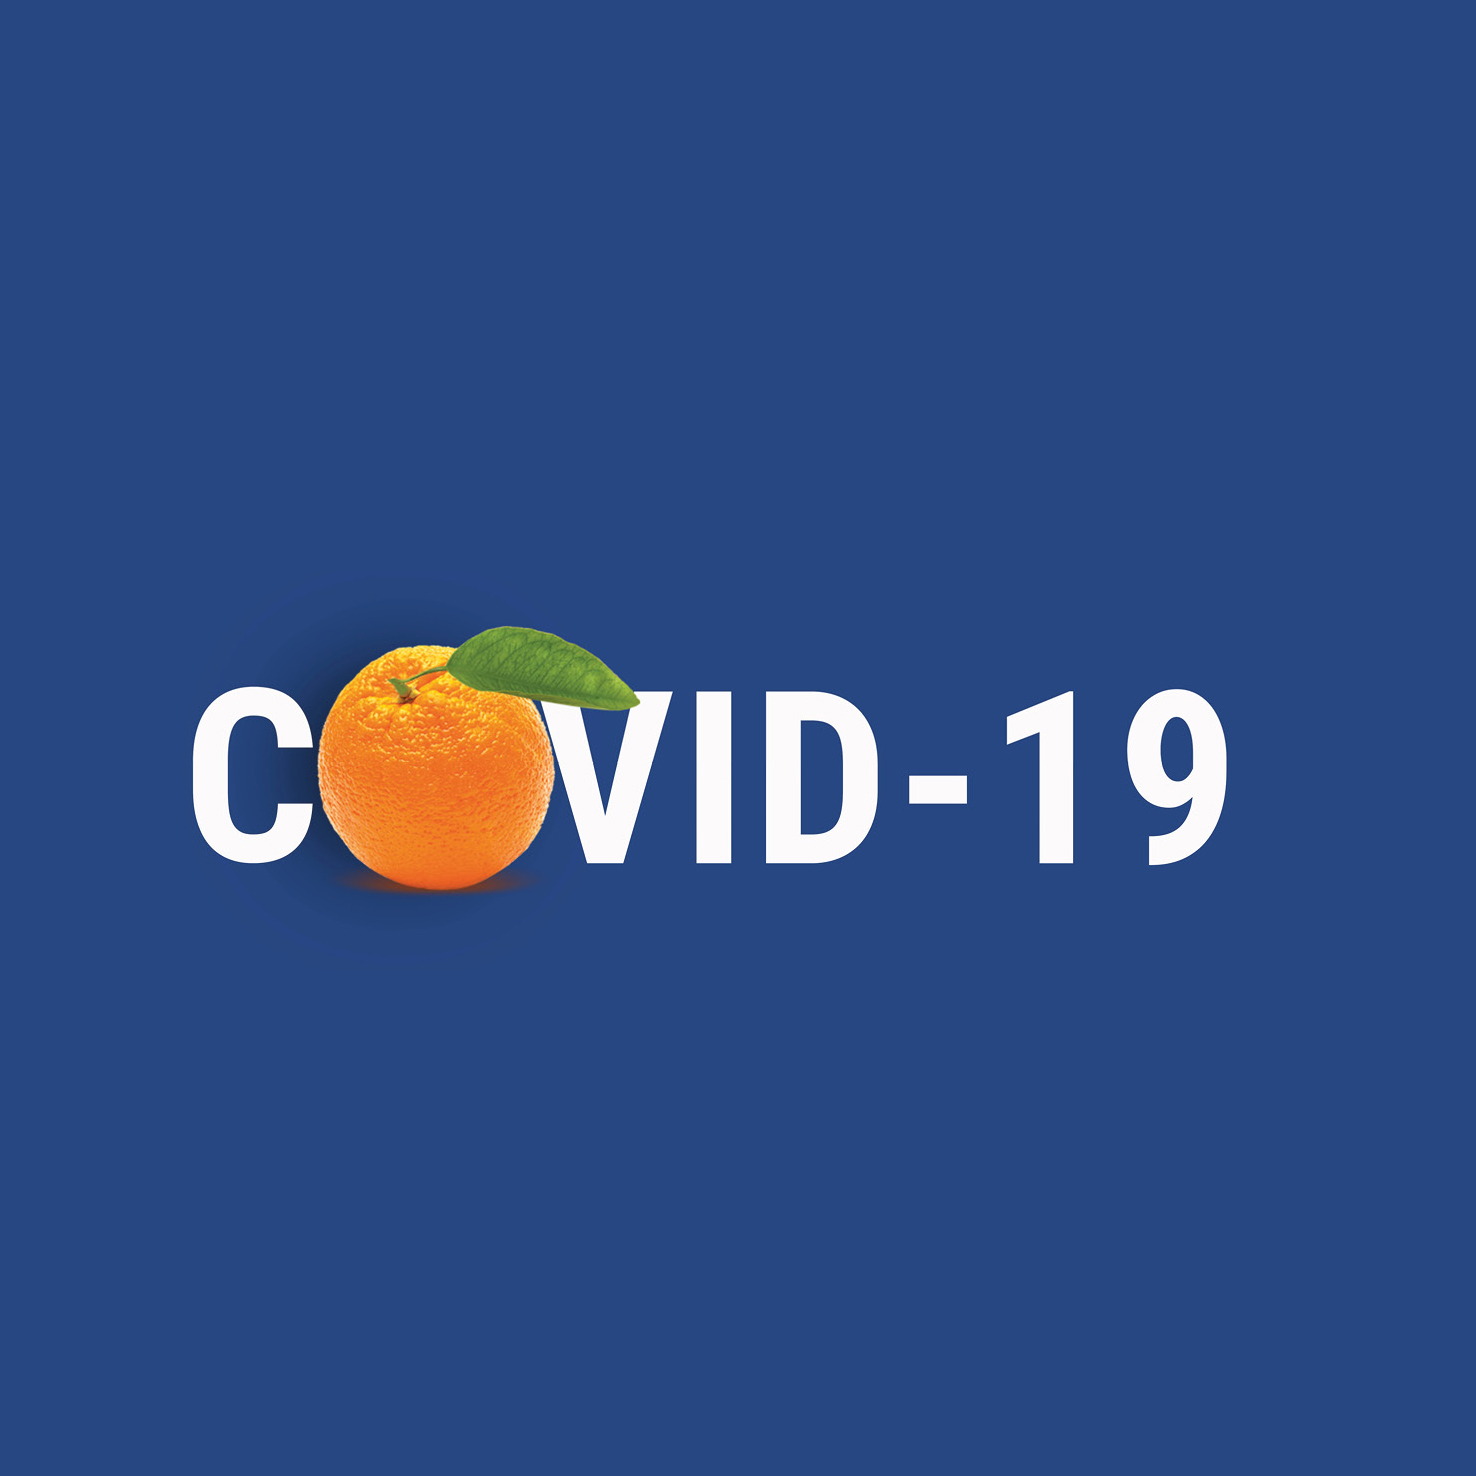 Portakaldan covid-19